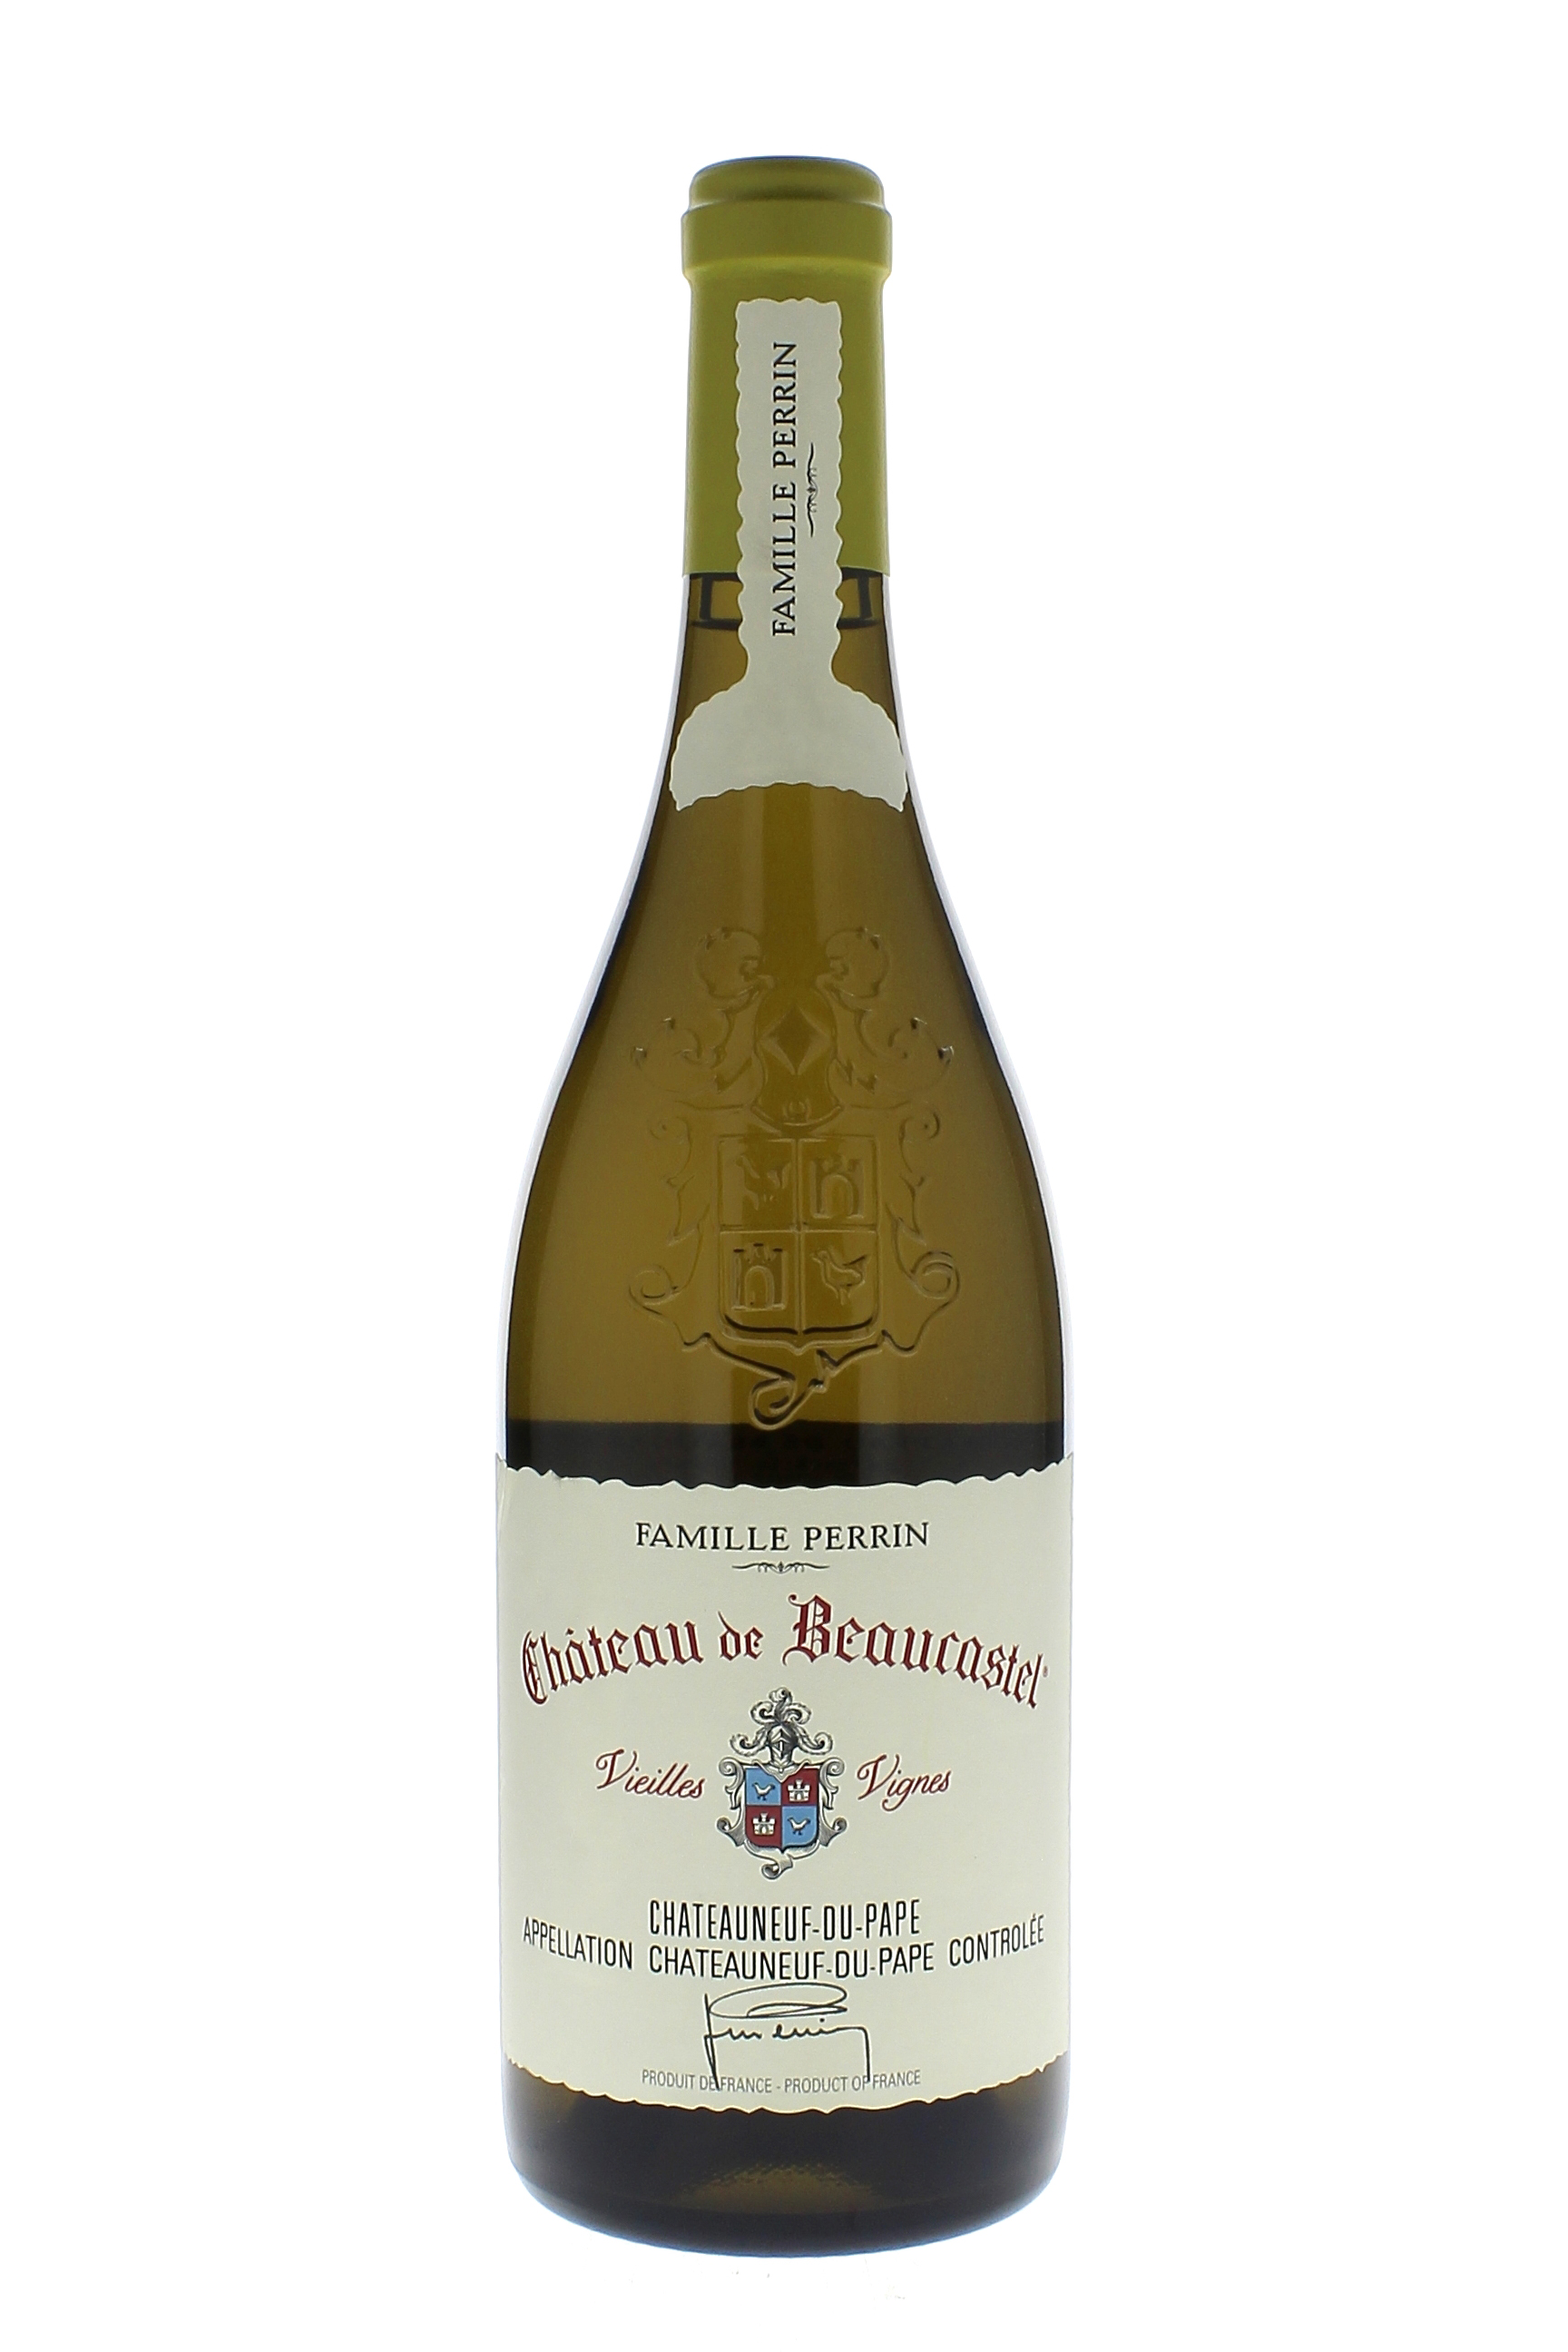 Beaucastel roussane vieilles vignes 2014  Chteauneuf-du-Pape, Valle du Rhne Blanc